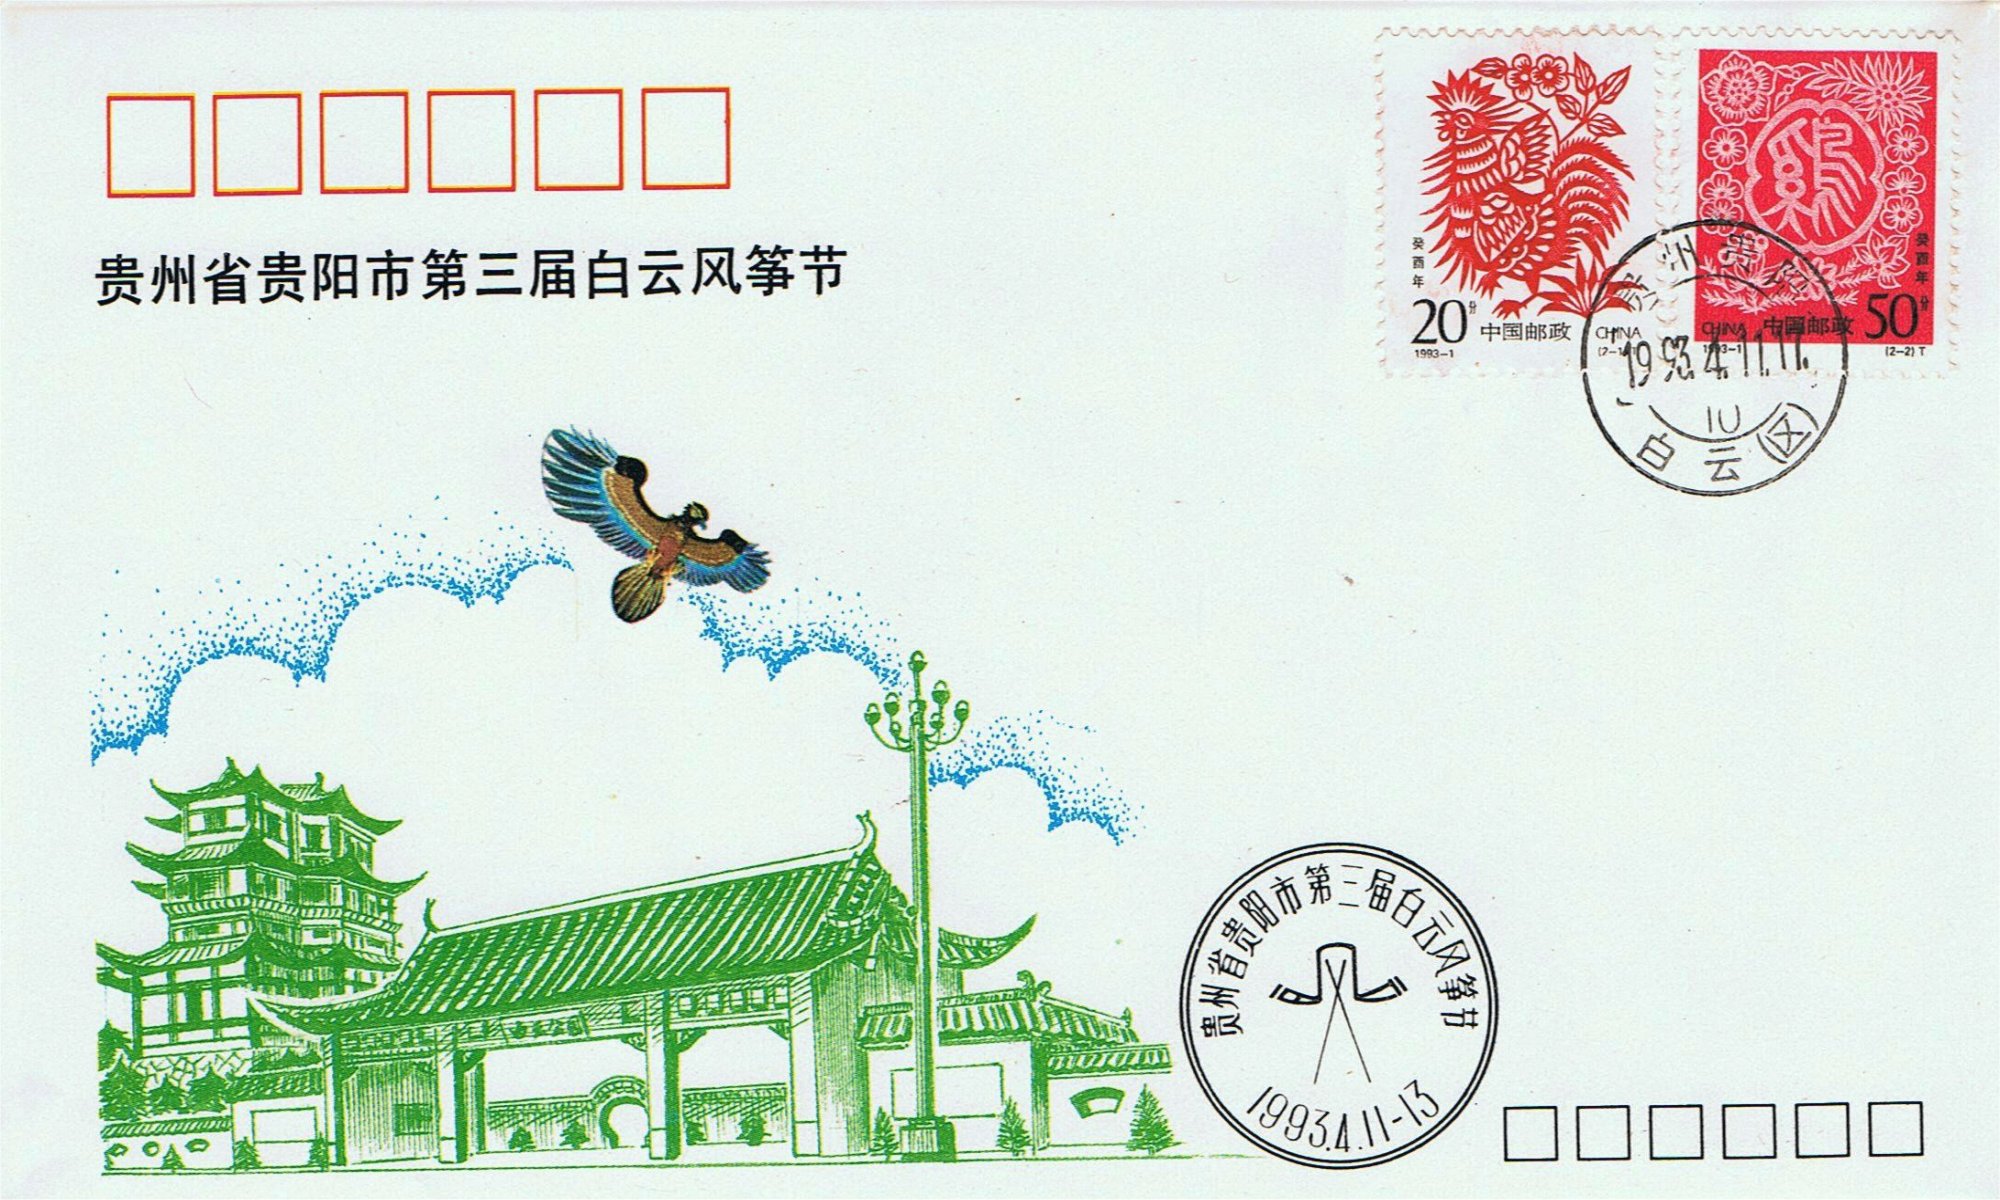 3rd
          Guiyang Kite Festival 1993